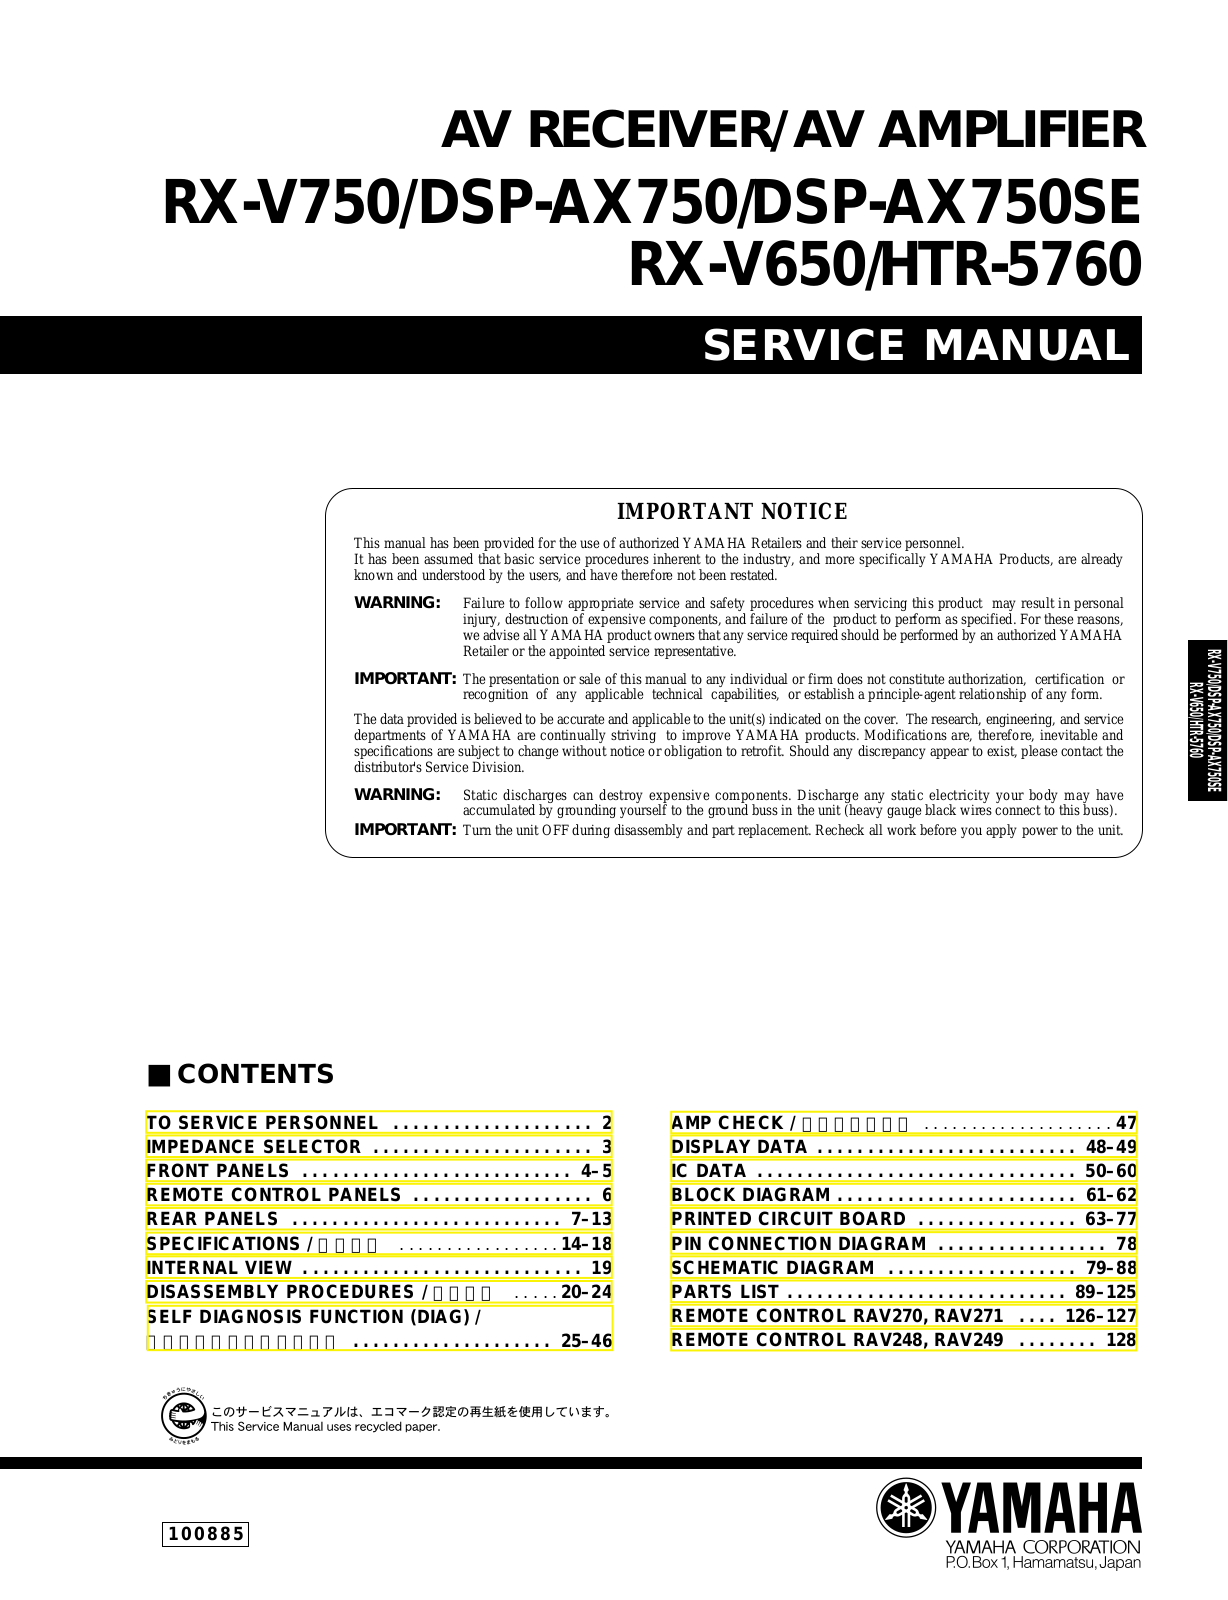 Sony RX-V750, DSP-AX750, DSP-AX750SE, RX-V650, HTR-5760 Service Manual